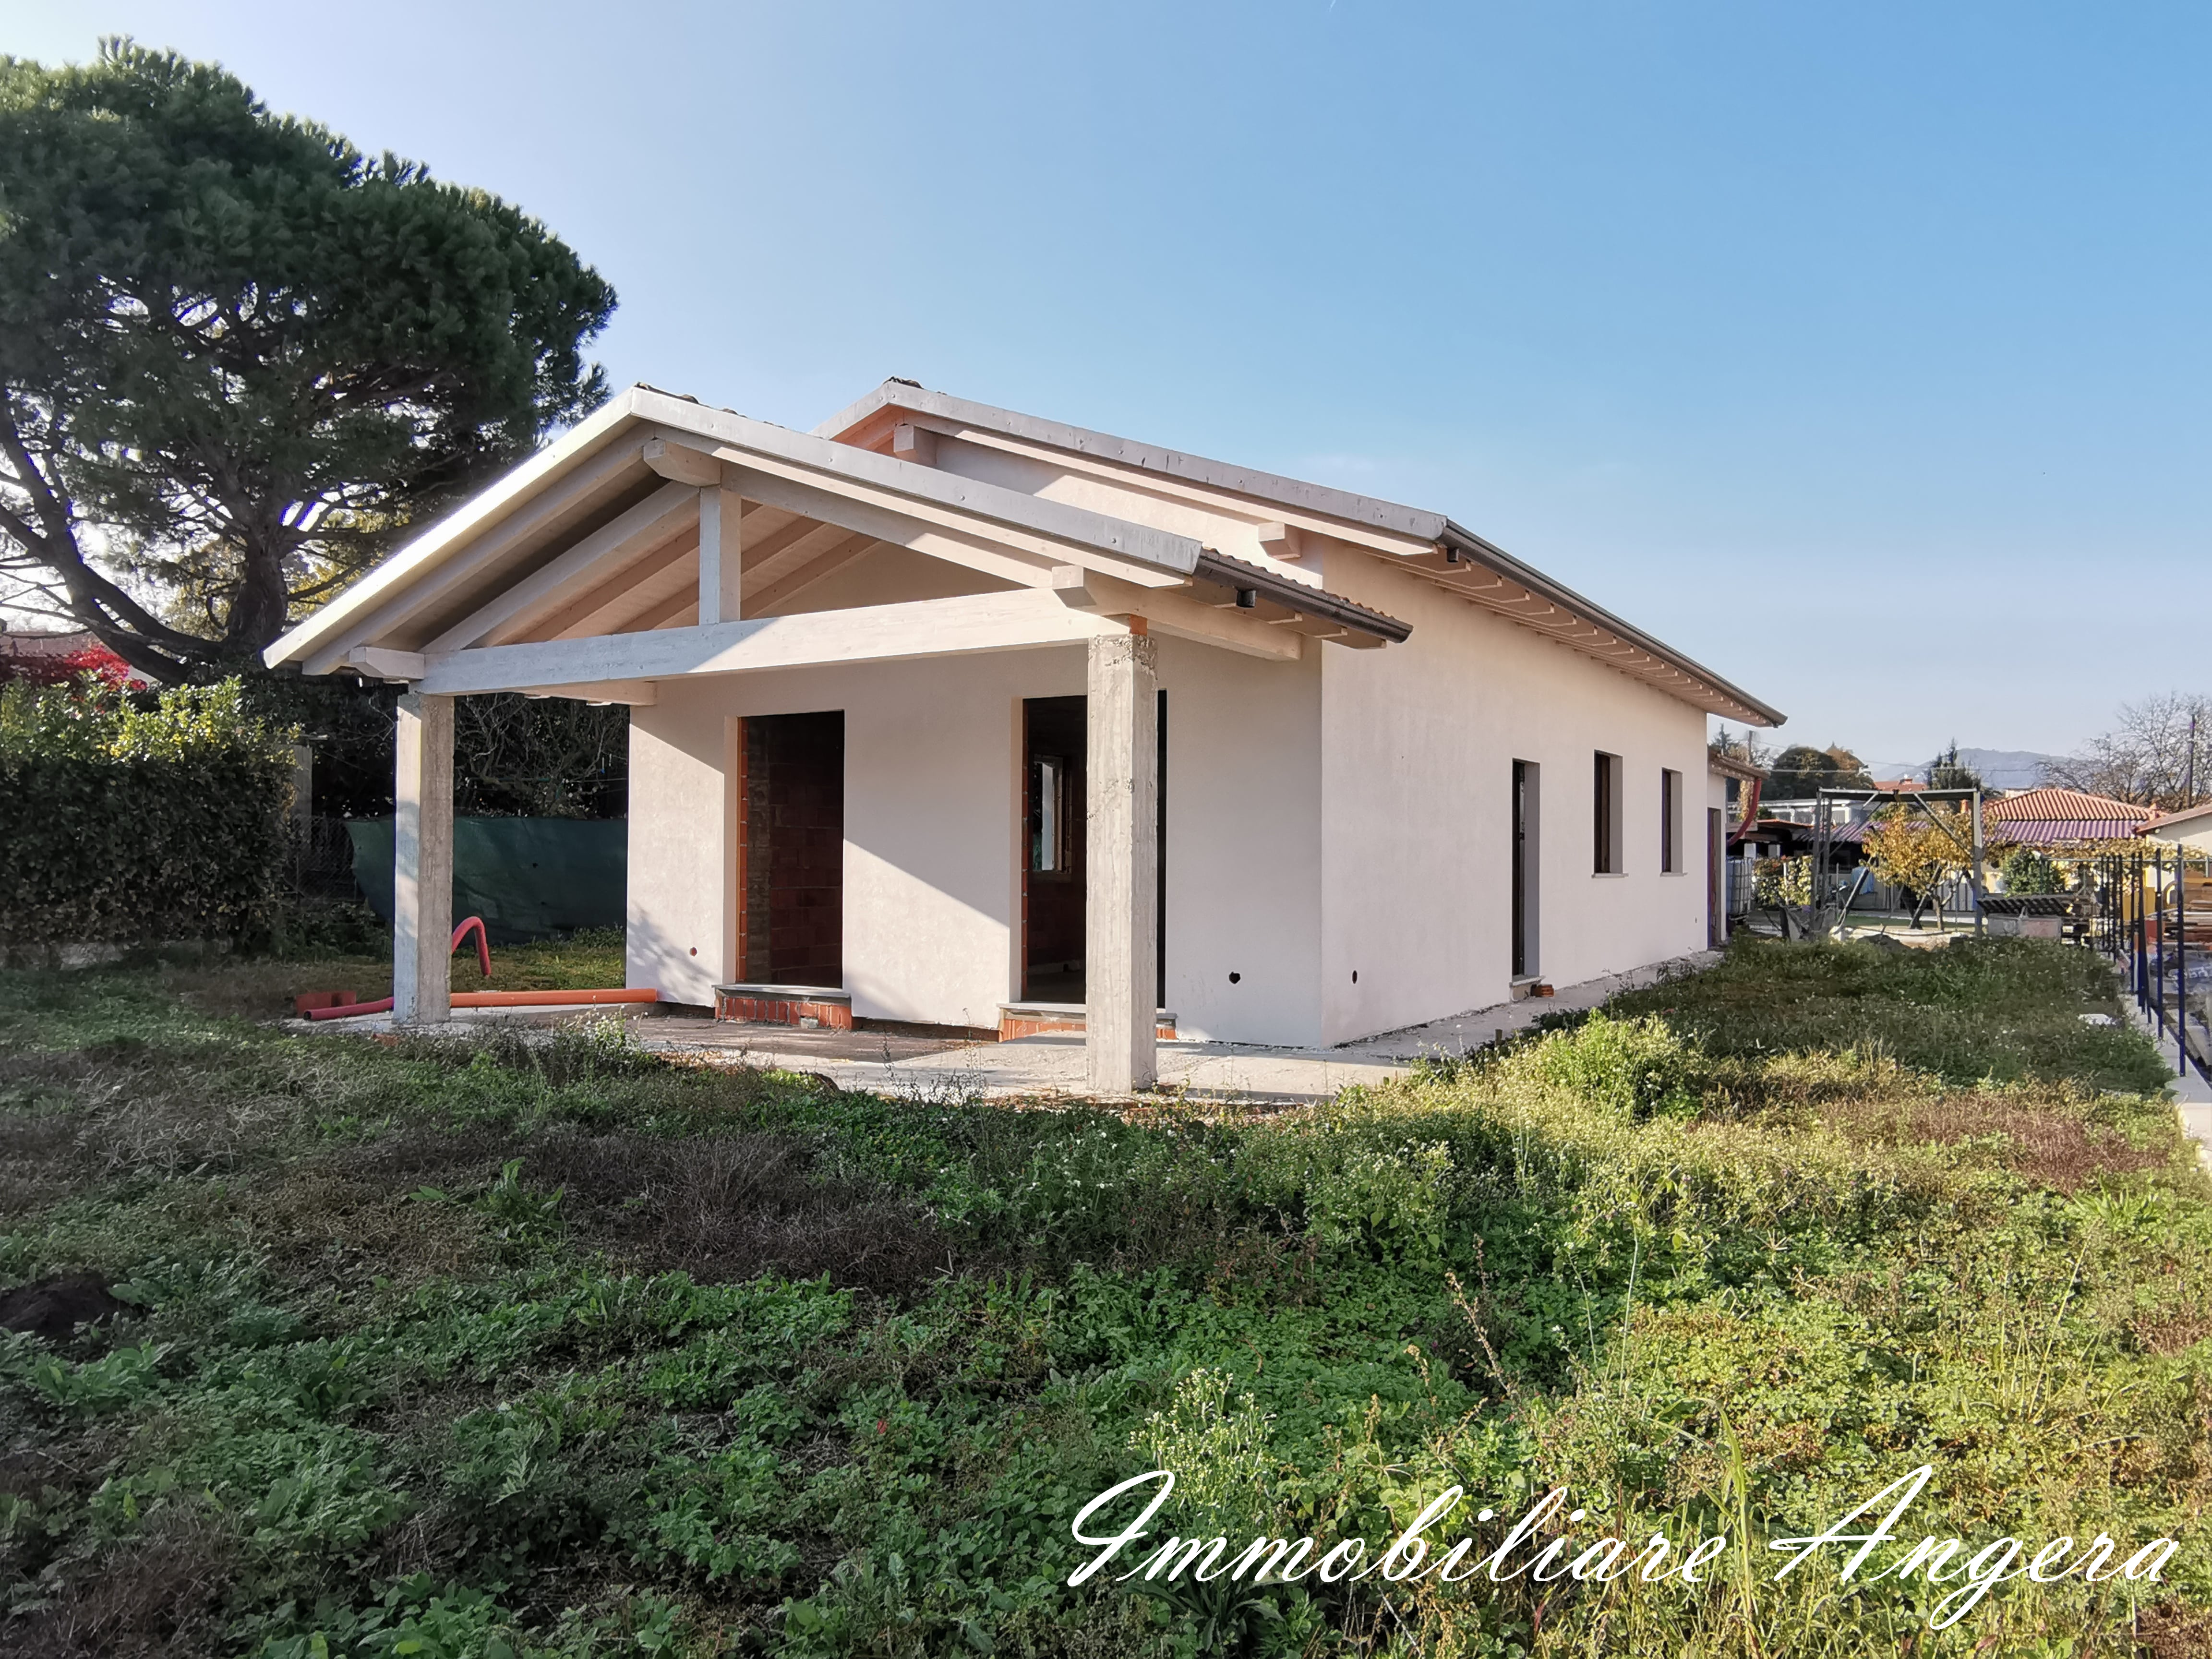 New villa, Angera via Barech